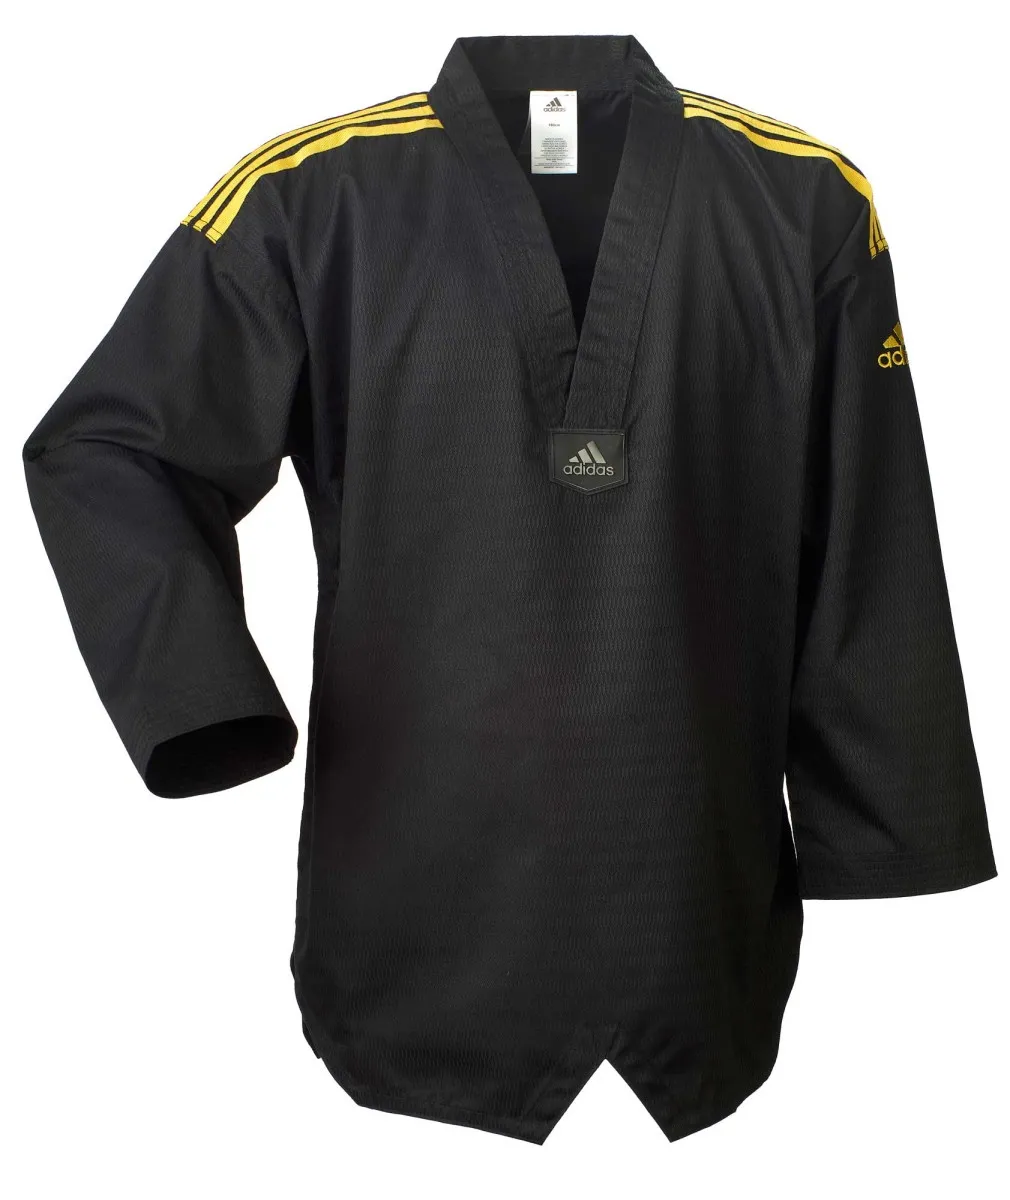 adidas Taekwondoanzug adi champion schwarz, goldene Schulterstreifen Jacke